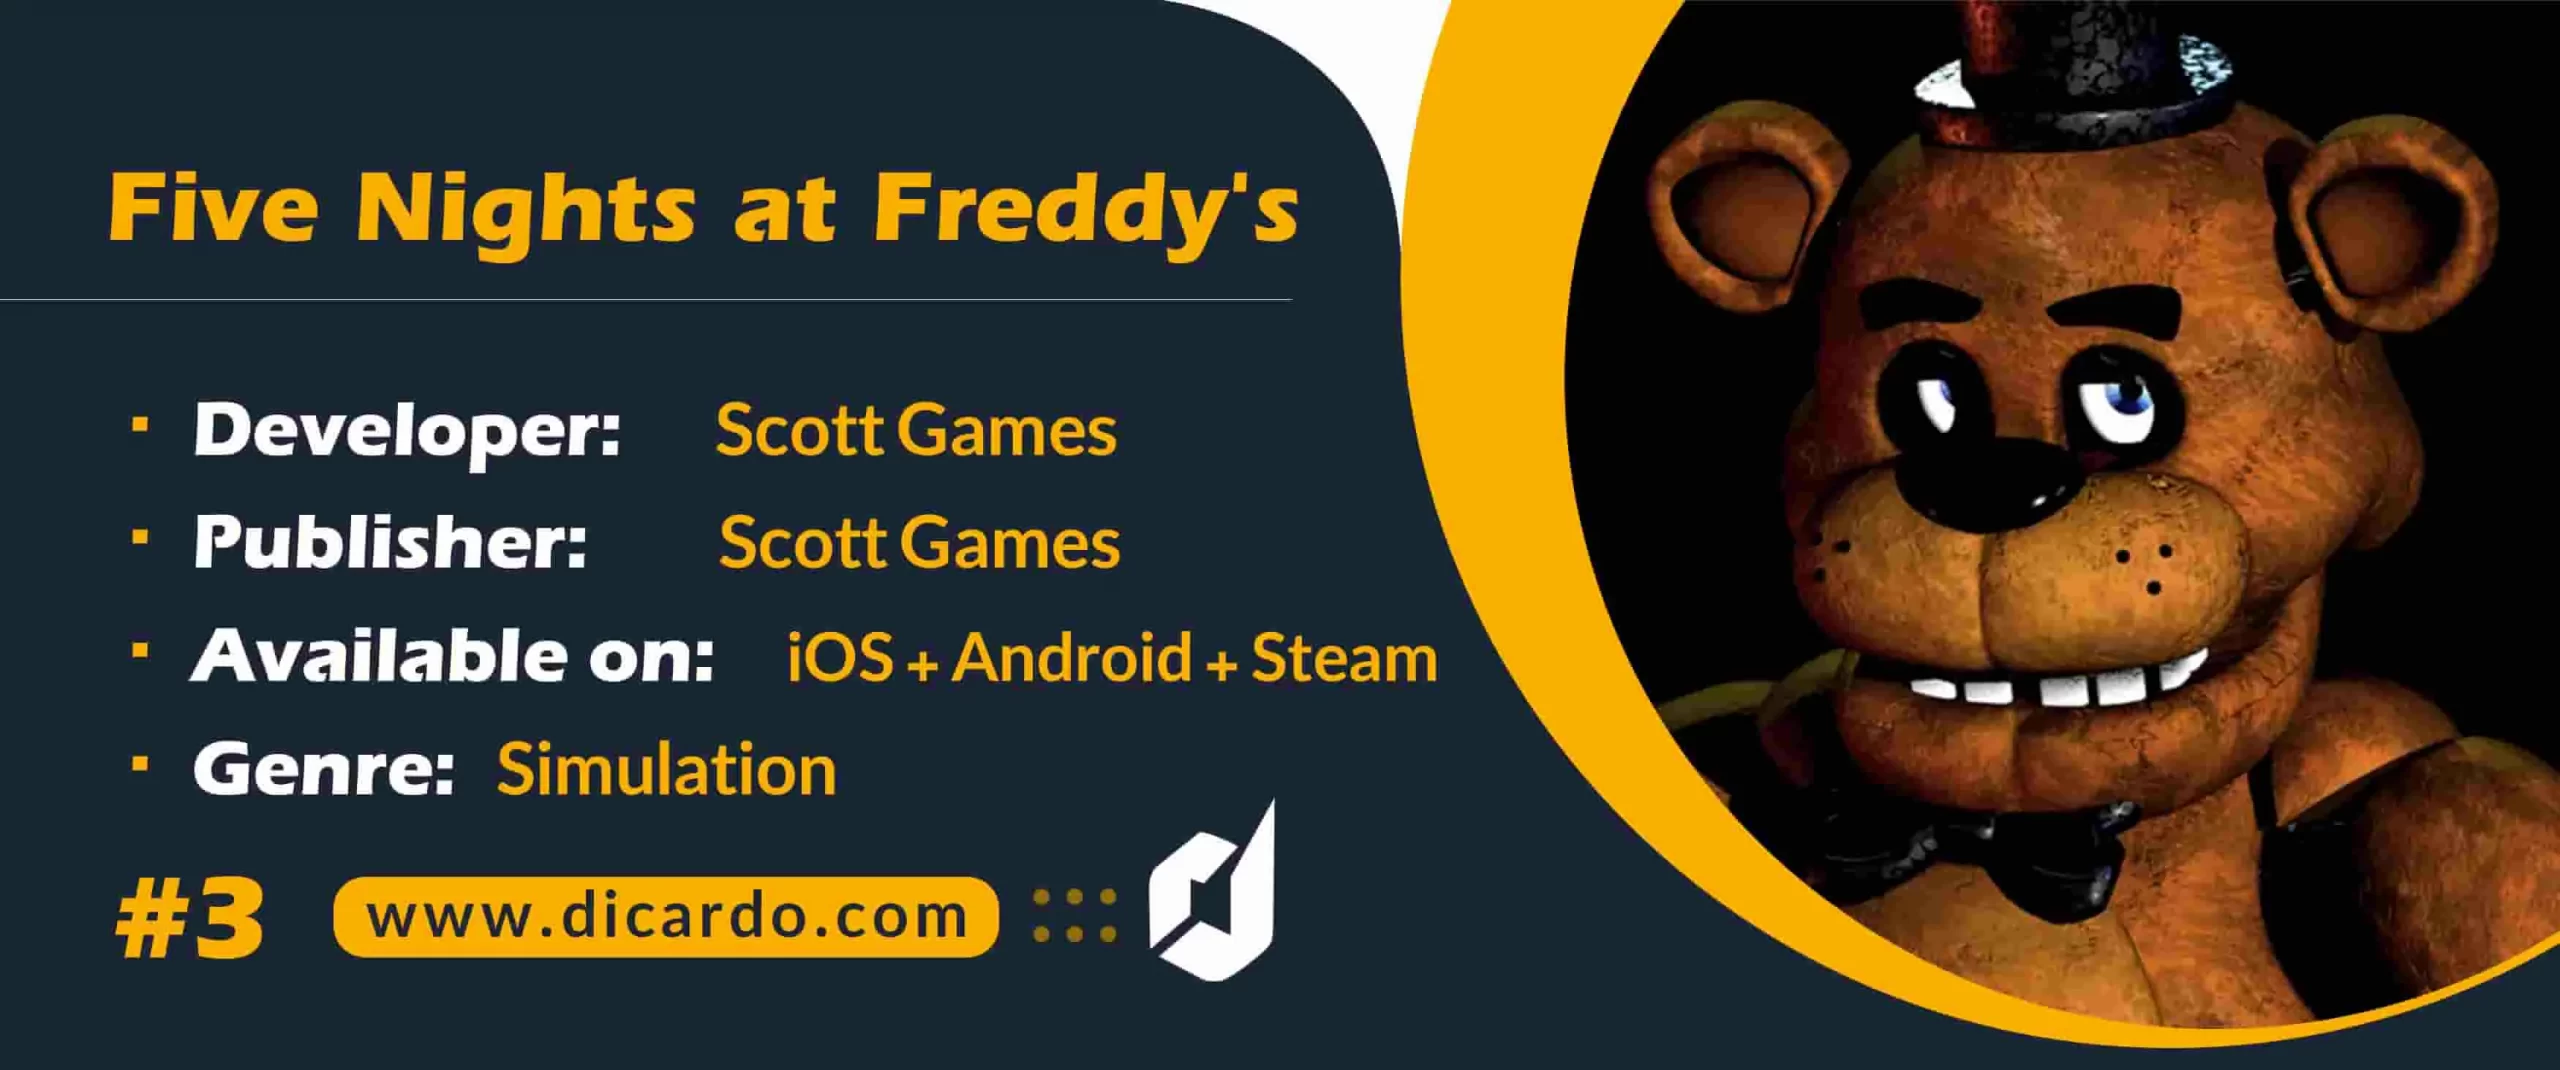 فایو نایتس ات فردیس Five Nights at Freddys یک بازی ترسناک با ژانر مخفی کاری